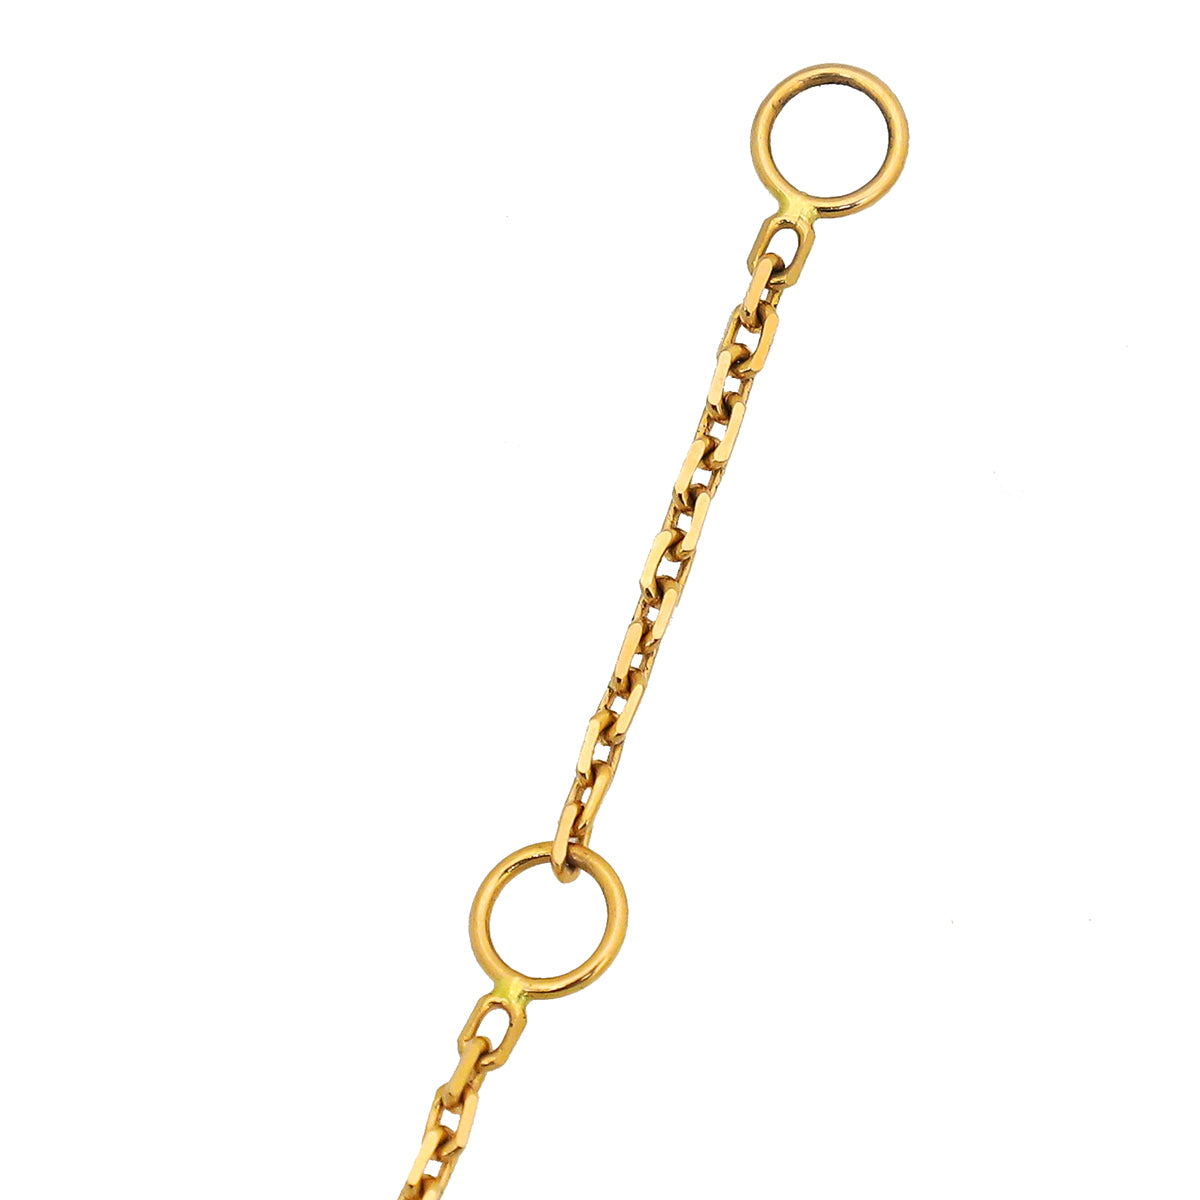 Chaumet 18K Rose Gold Diamond Jeux De Liens Harmony Small Pendant Necklace